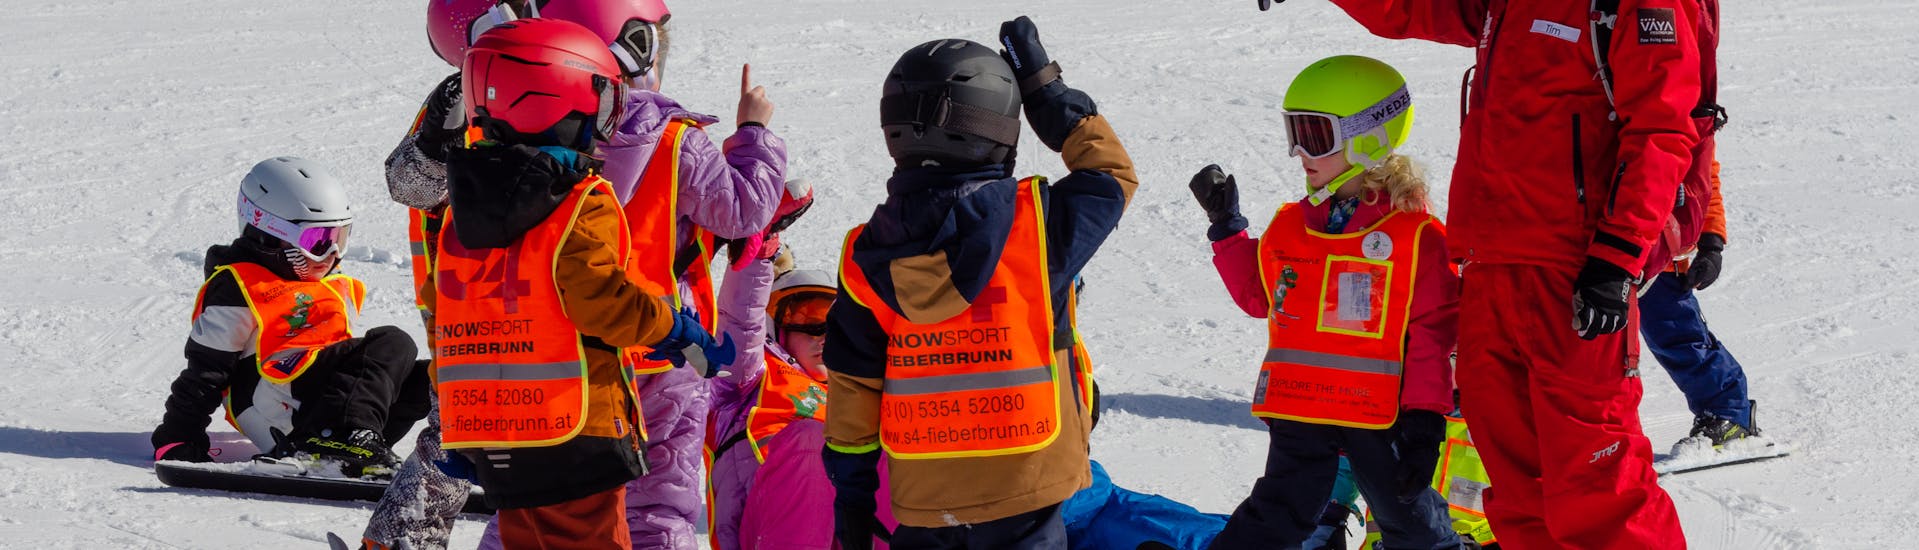 Lezioni di sci per bambini a partire da 3 anni per tutti i livelli con S4 Snowsport Fieberbrunn.